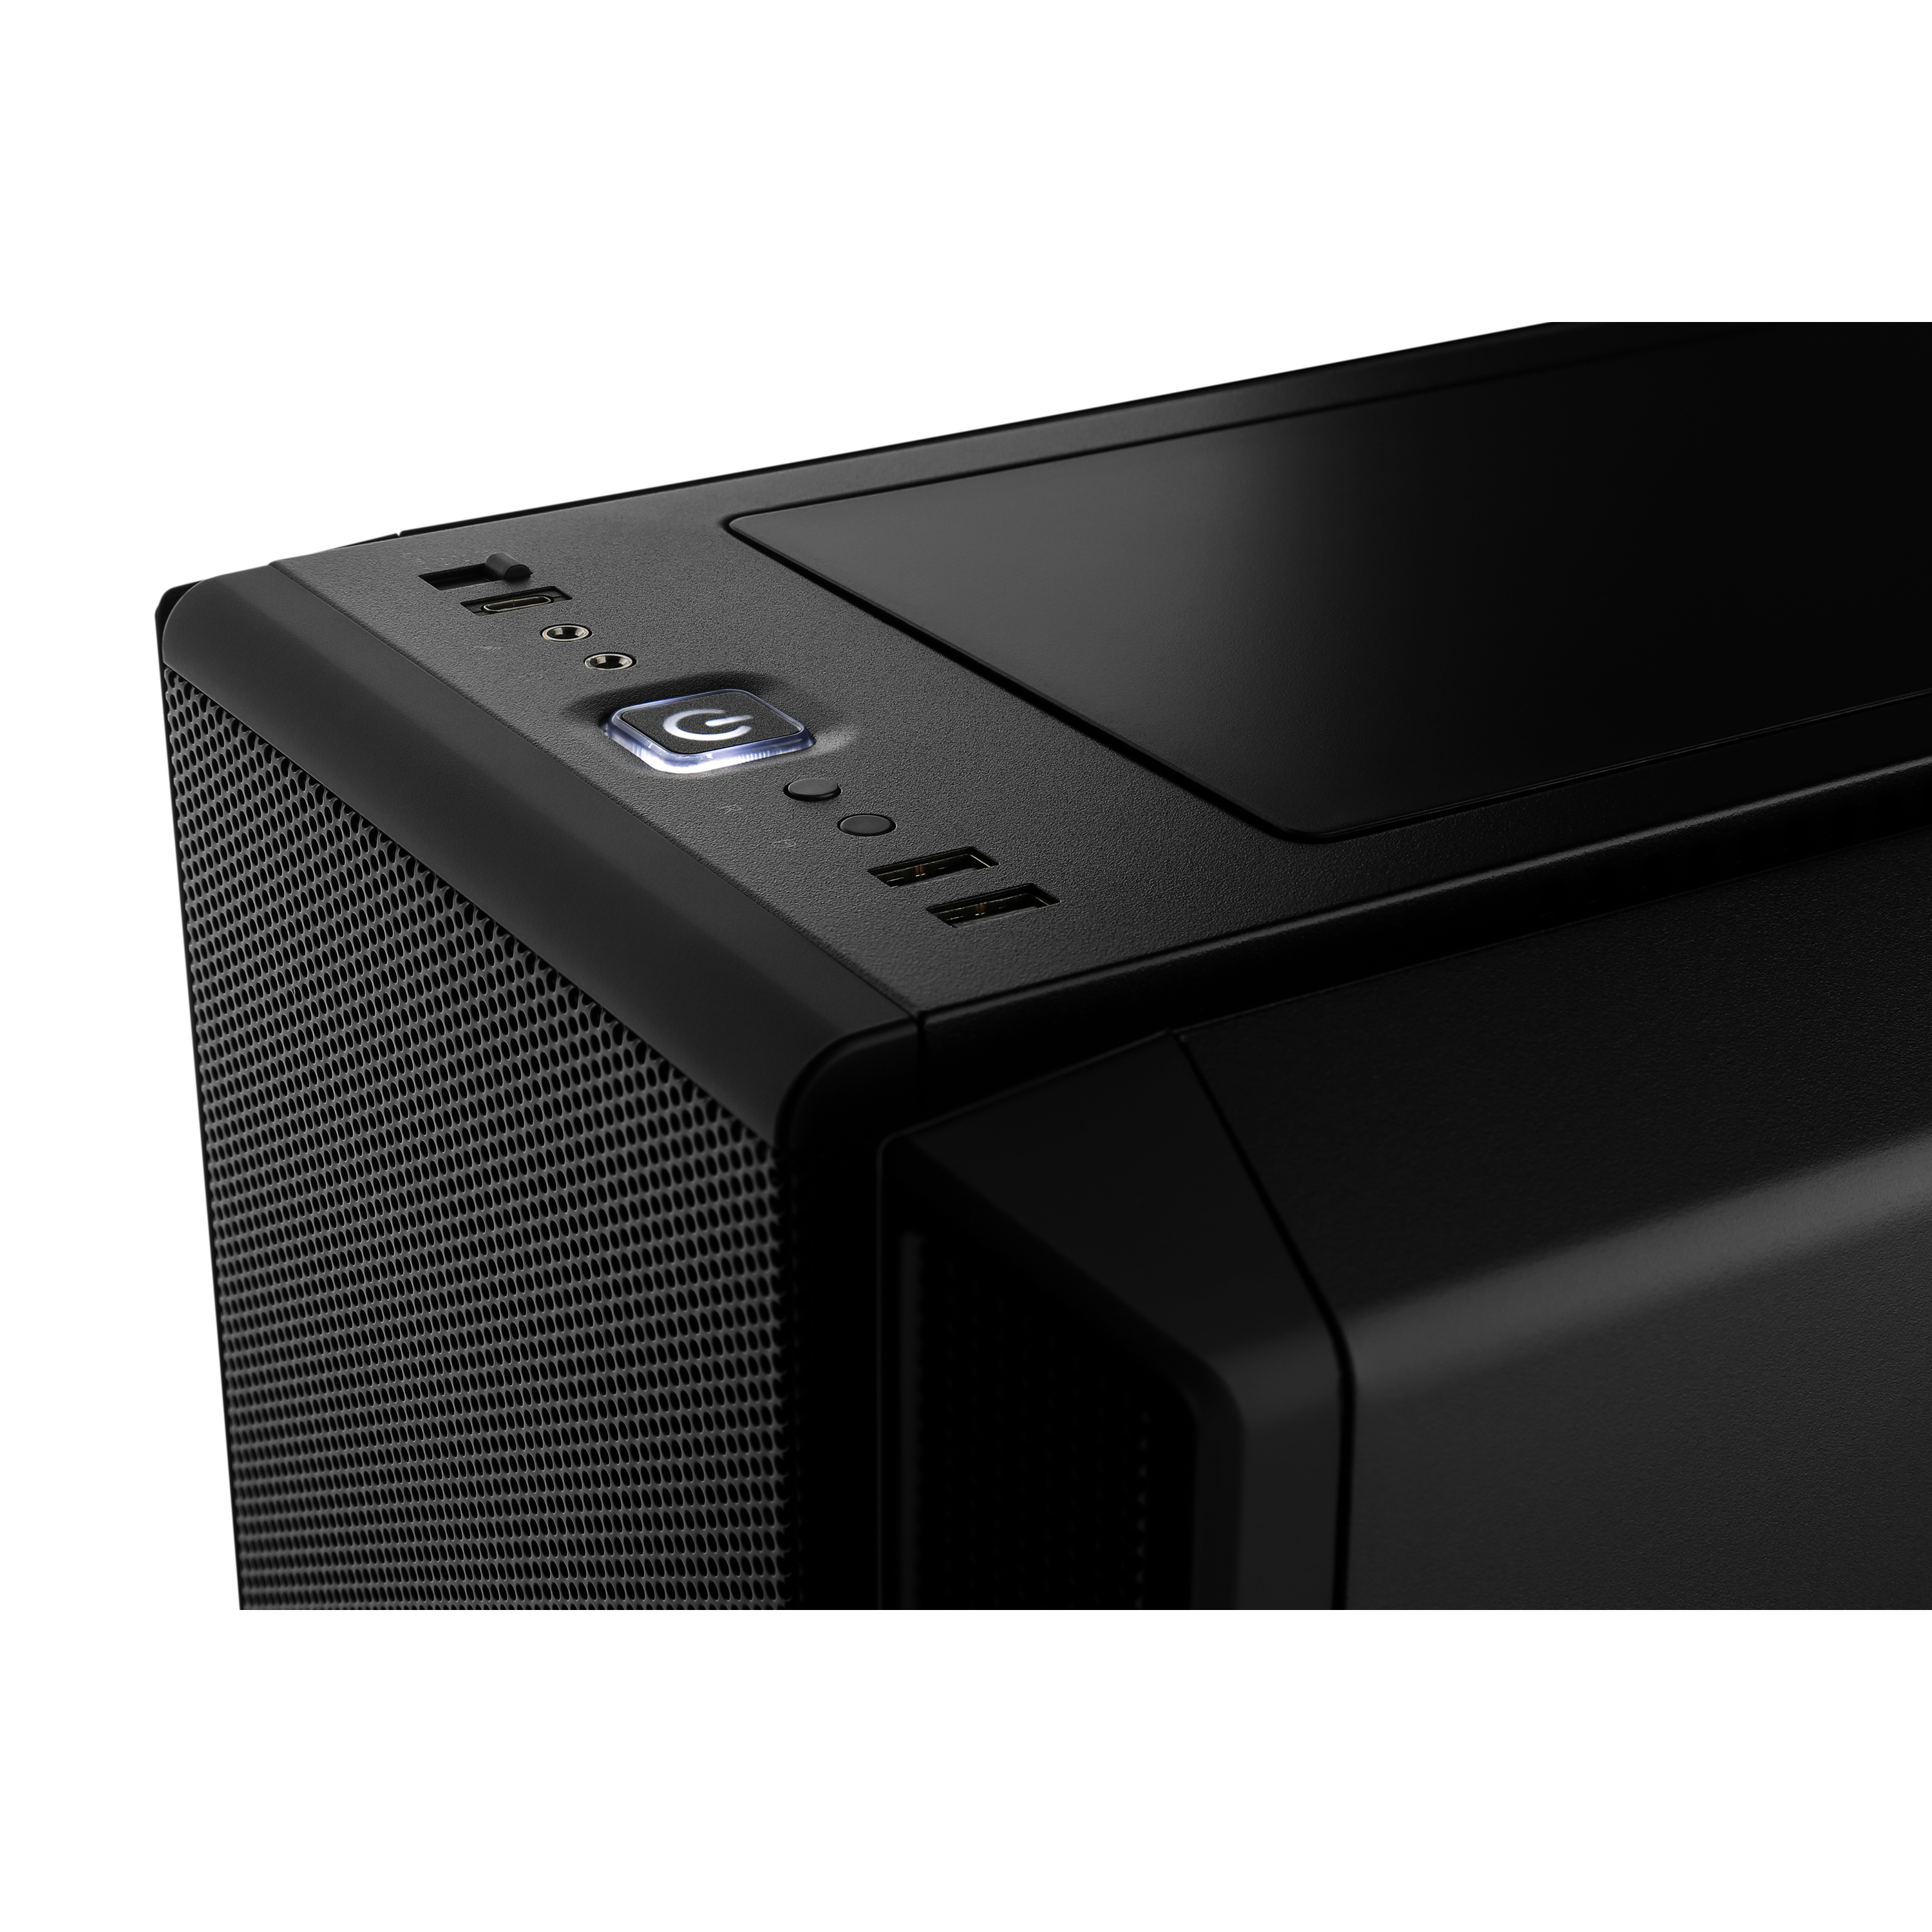 Aopen DE6200 reproductor multimedia y grabador de sonido Negro 4K Ultra HD  64 GB 3840 x